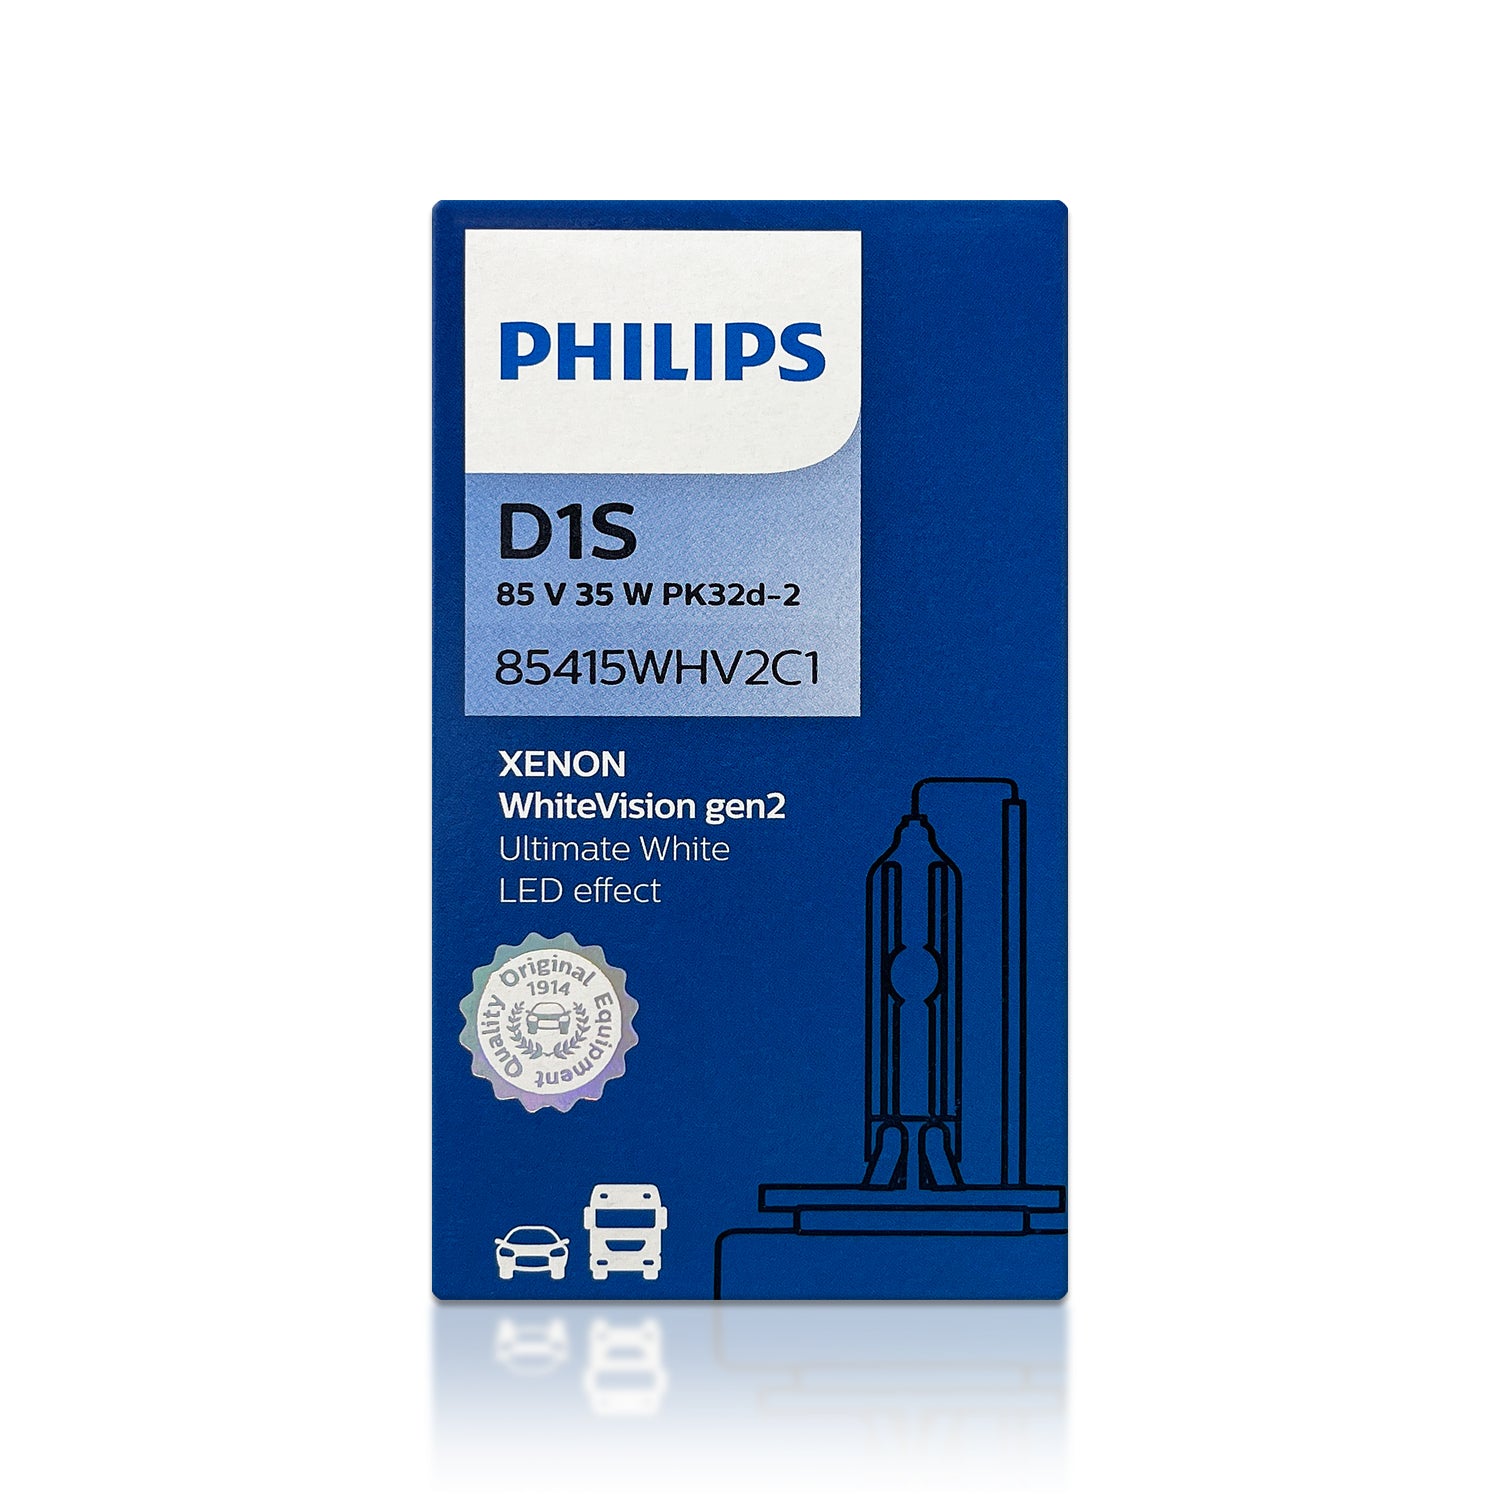 D1S - Philips 85415WHV2 White Vision Gen2 HID Xenon Bulbs